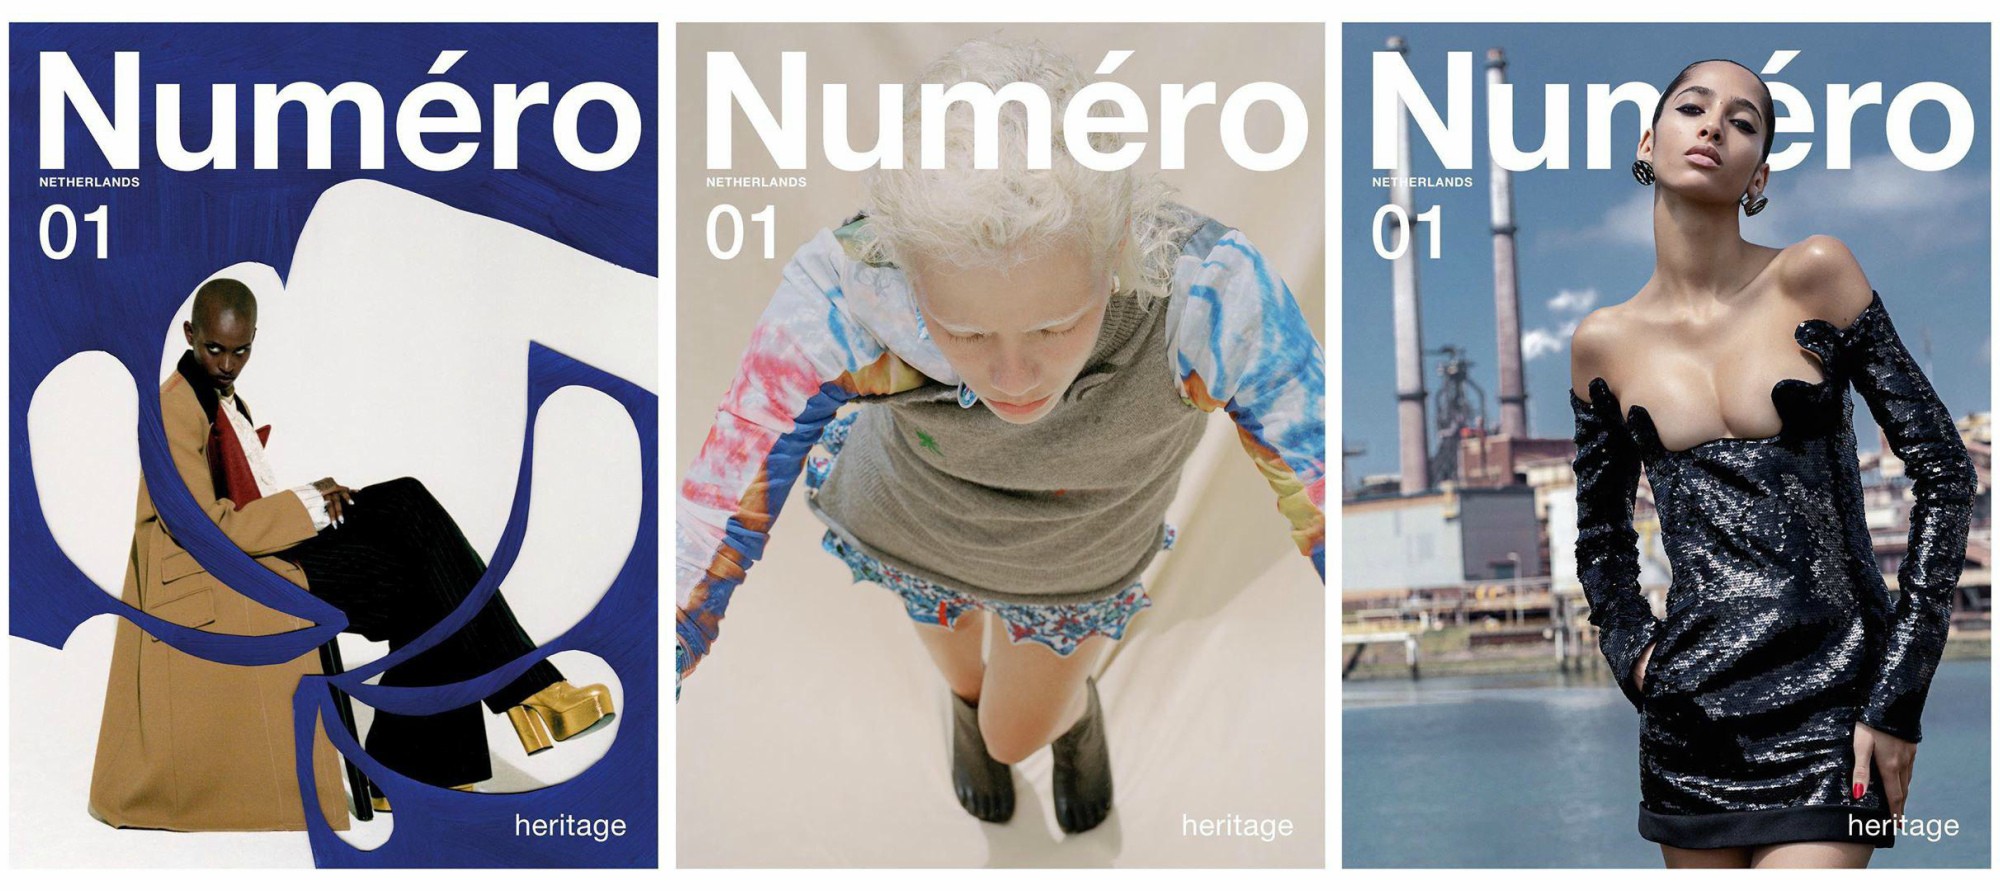 В Нидерландах появился журнал Numéro – так выглядит первый номер